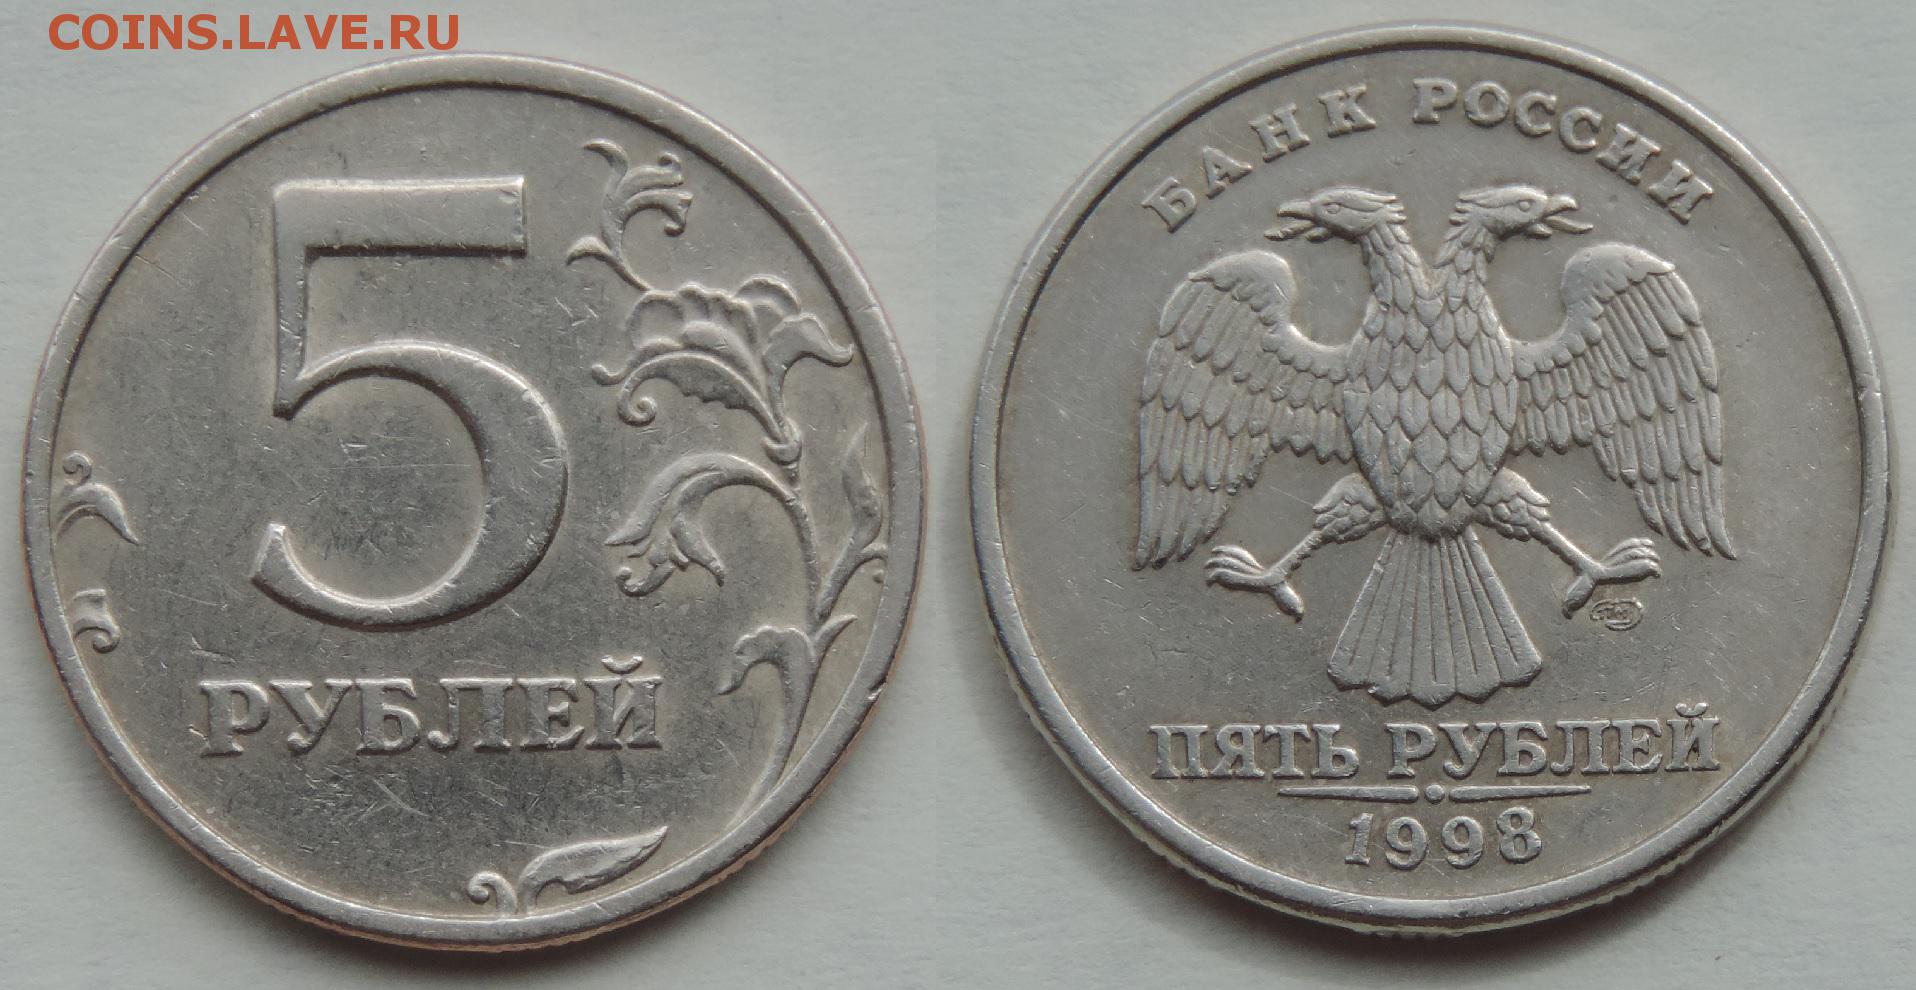 5 рублей 98 года. 5 Рублей 1998 шт 2.4. Монета 5 рублей 1998 СПМД. Редкая монета 5 рублей 1998. 5 Рублей 1998 СПМД редкая.